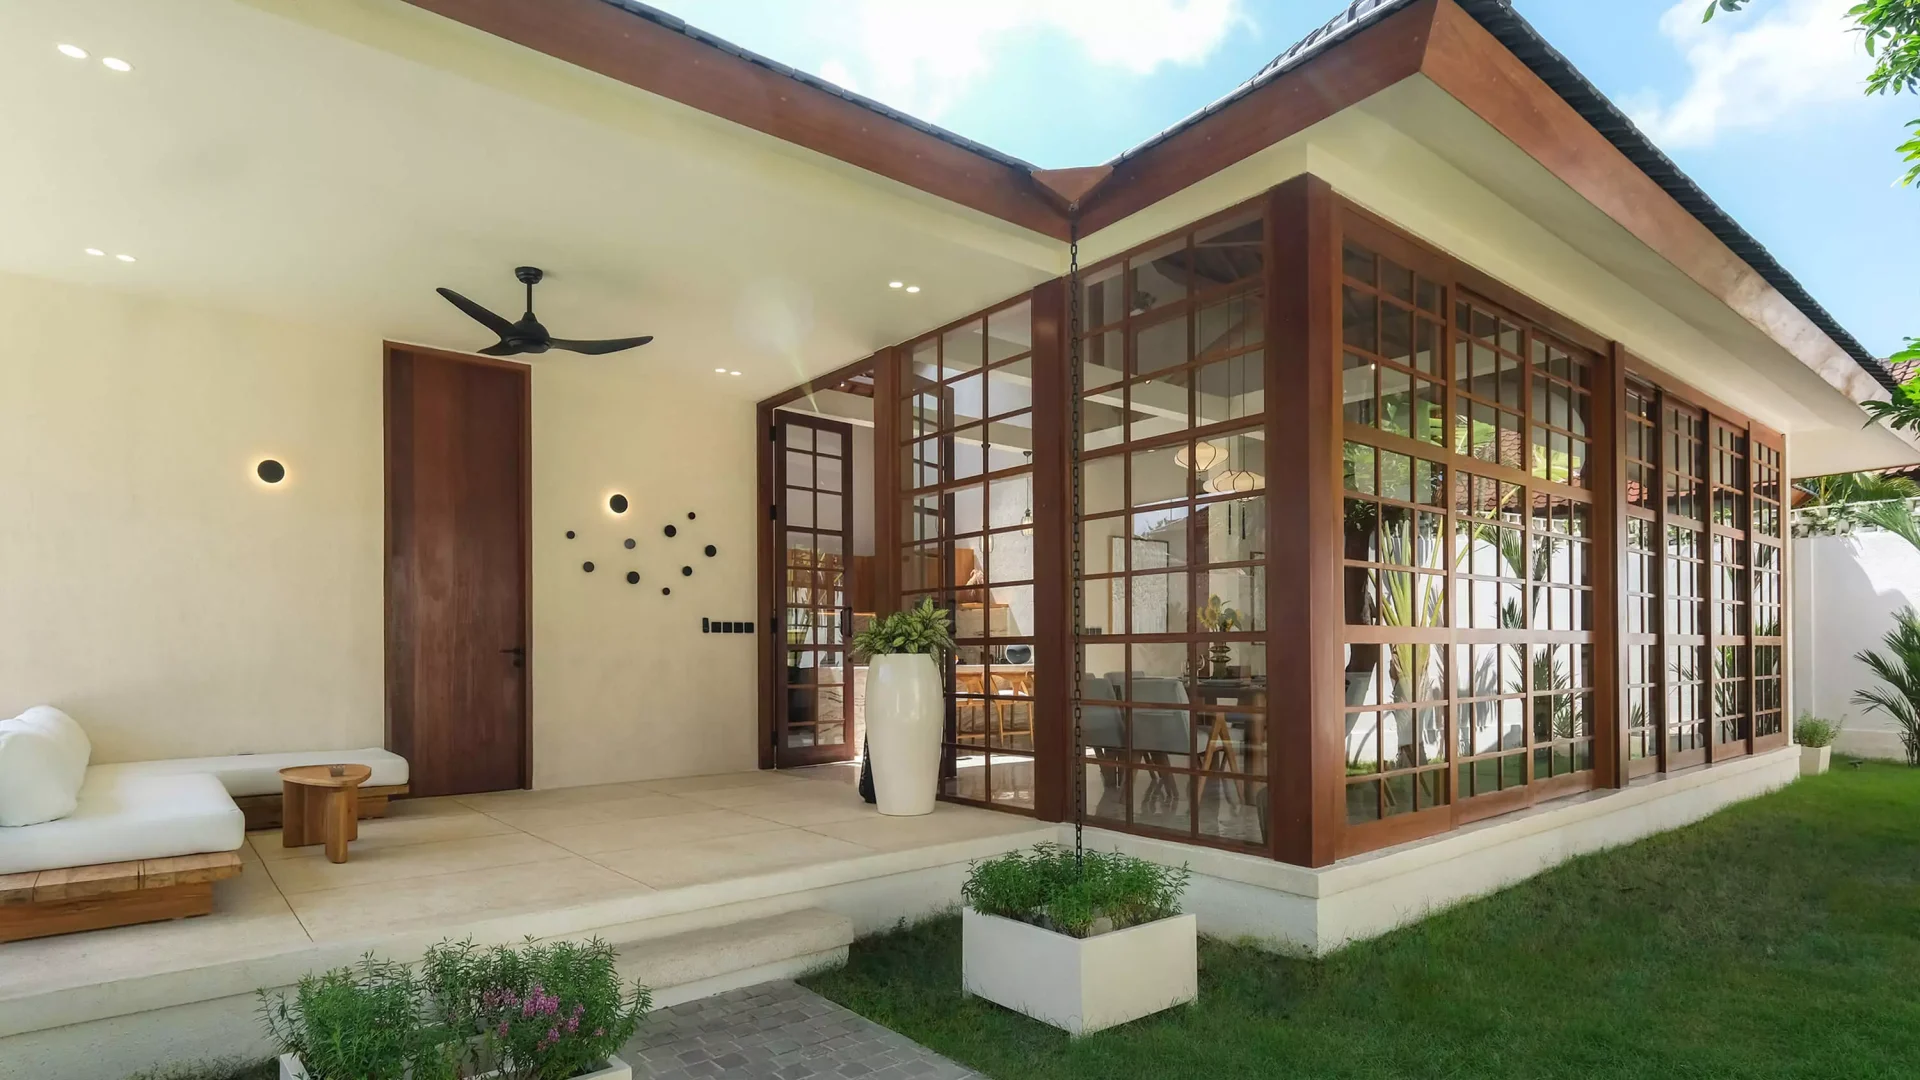 Casa in stil japandi sau wabisabi. O casa realizata in Bali de Studio 2.1 cu texturi naturale, lemn, piatra, culori pamantii si naturale unde vegetatia patrunde in locuinta.